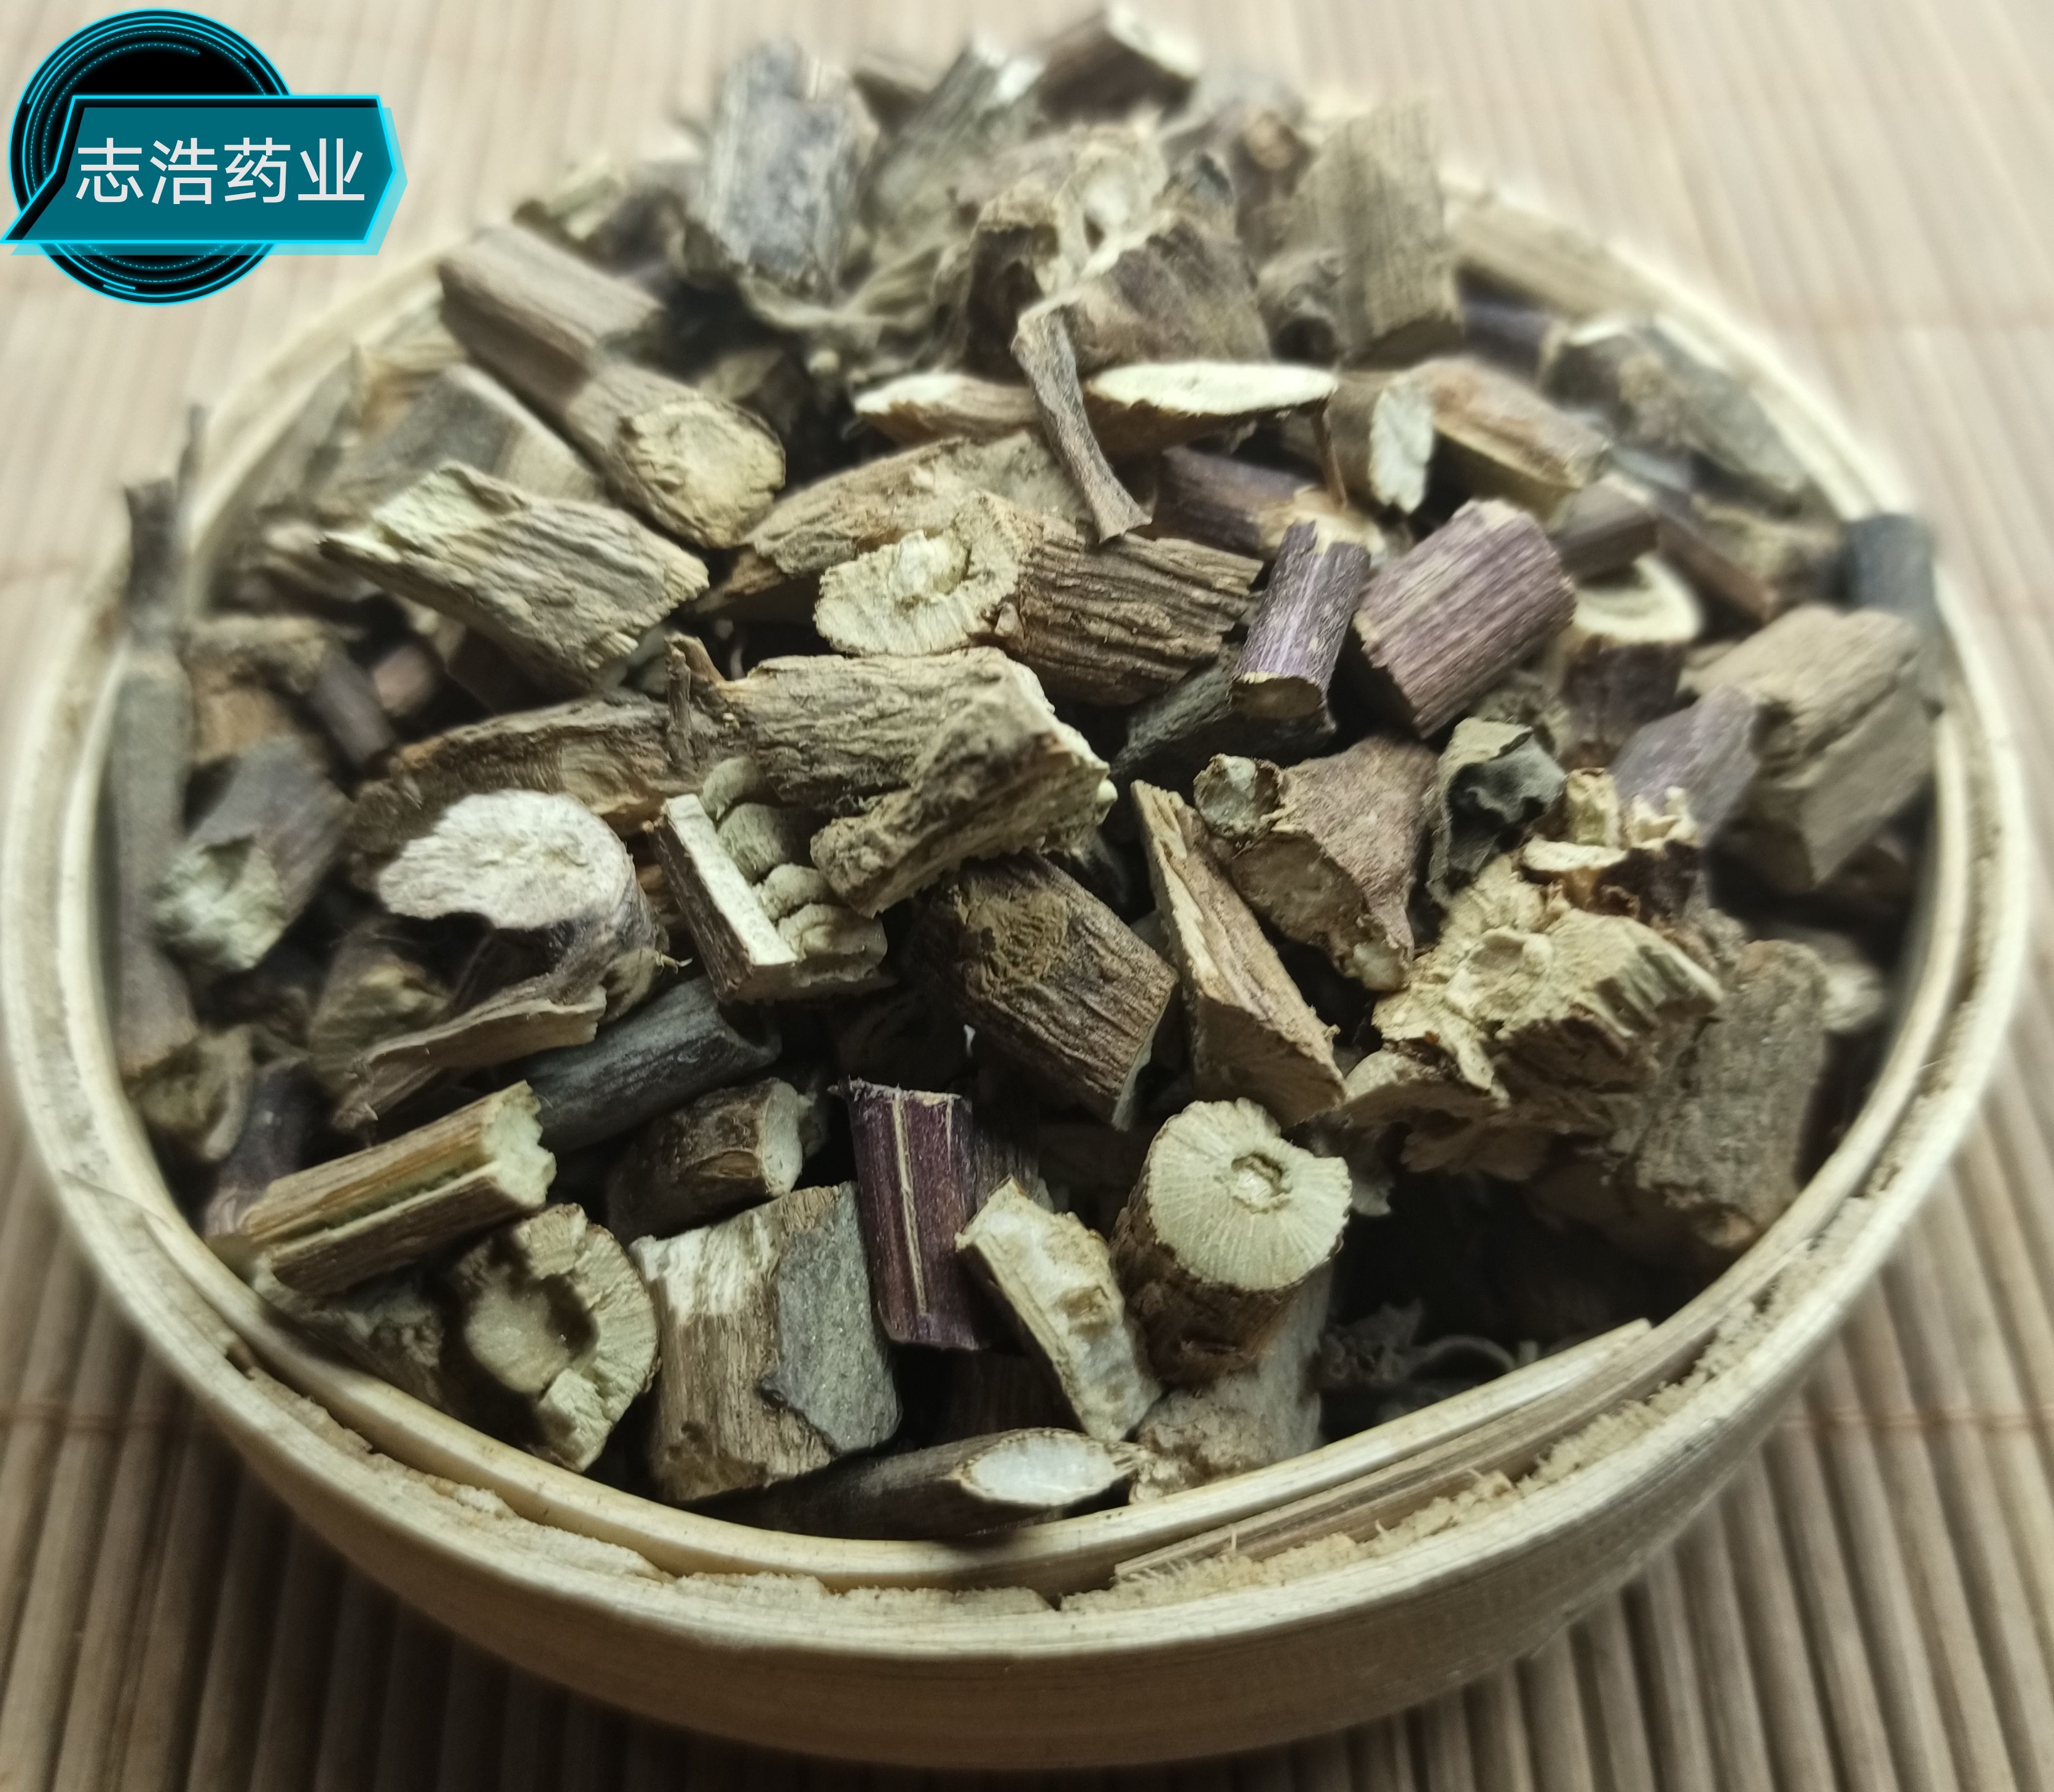 鄄城县霍香 广霍香 欢迎选购 各种中药材养生花茶批发 地道药材